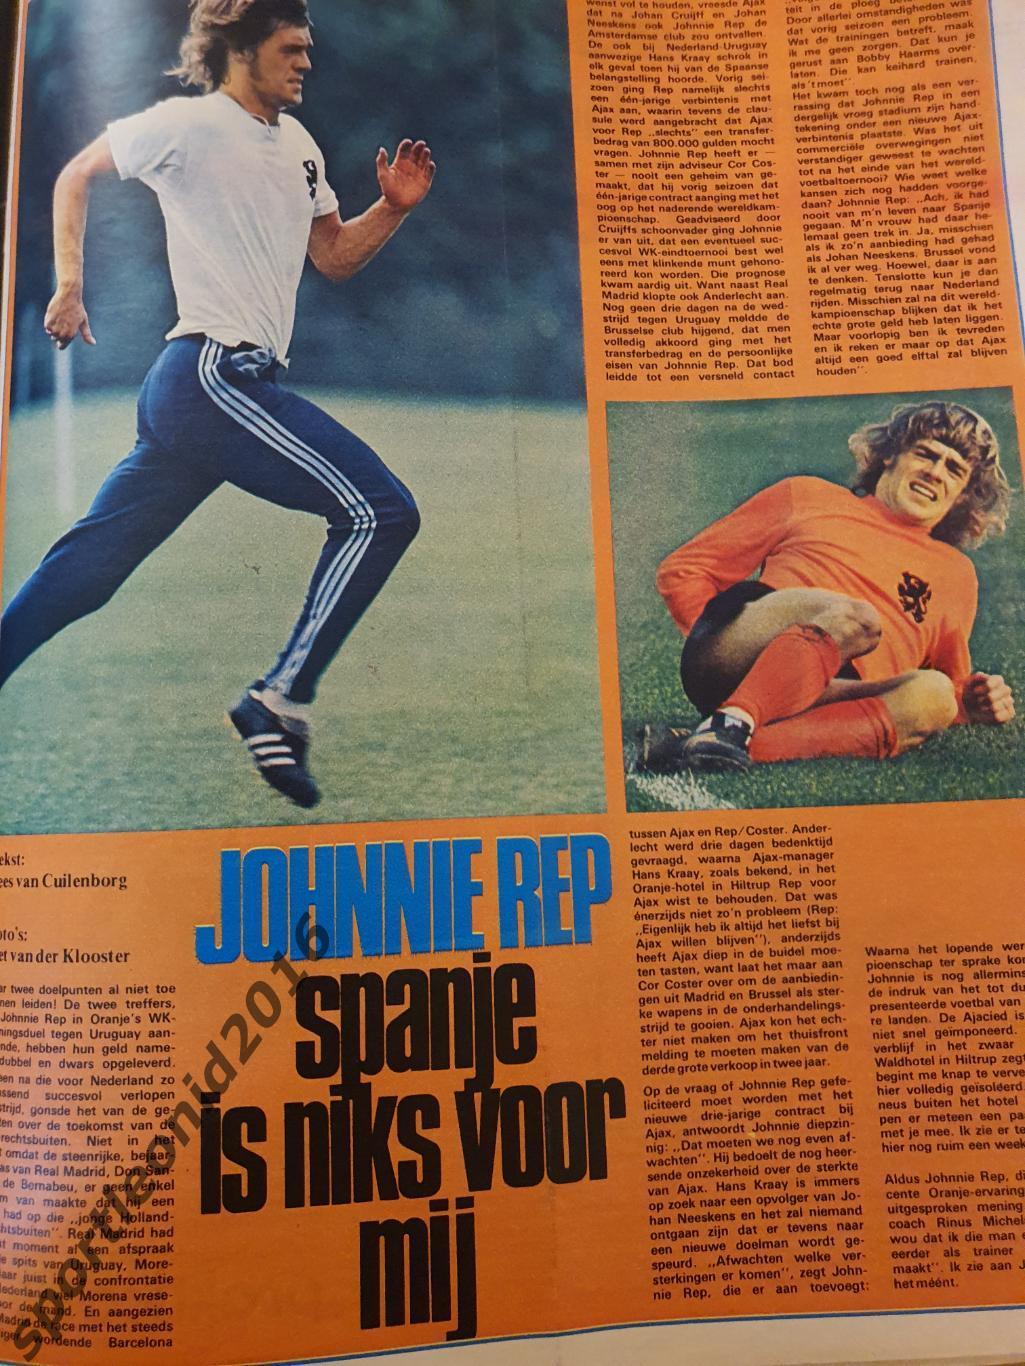 Voetbal International 1974.7 топ выпускОВ.Итоговые к ЧМ-74.1 7